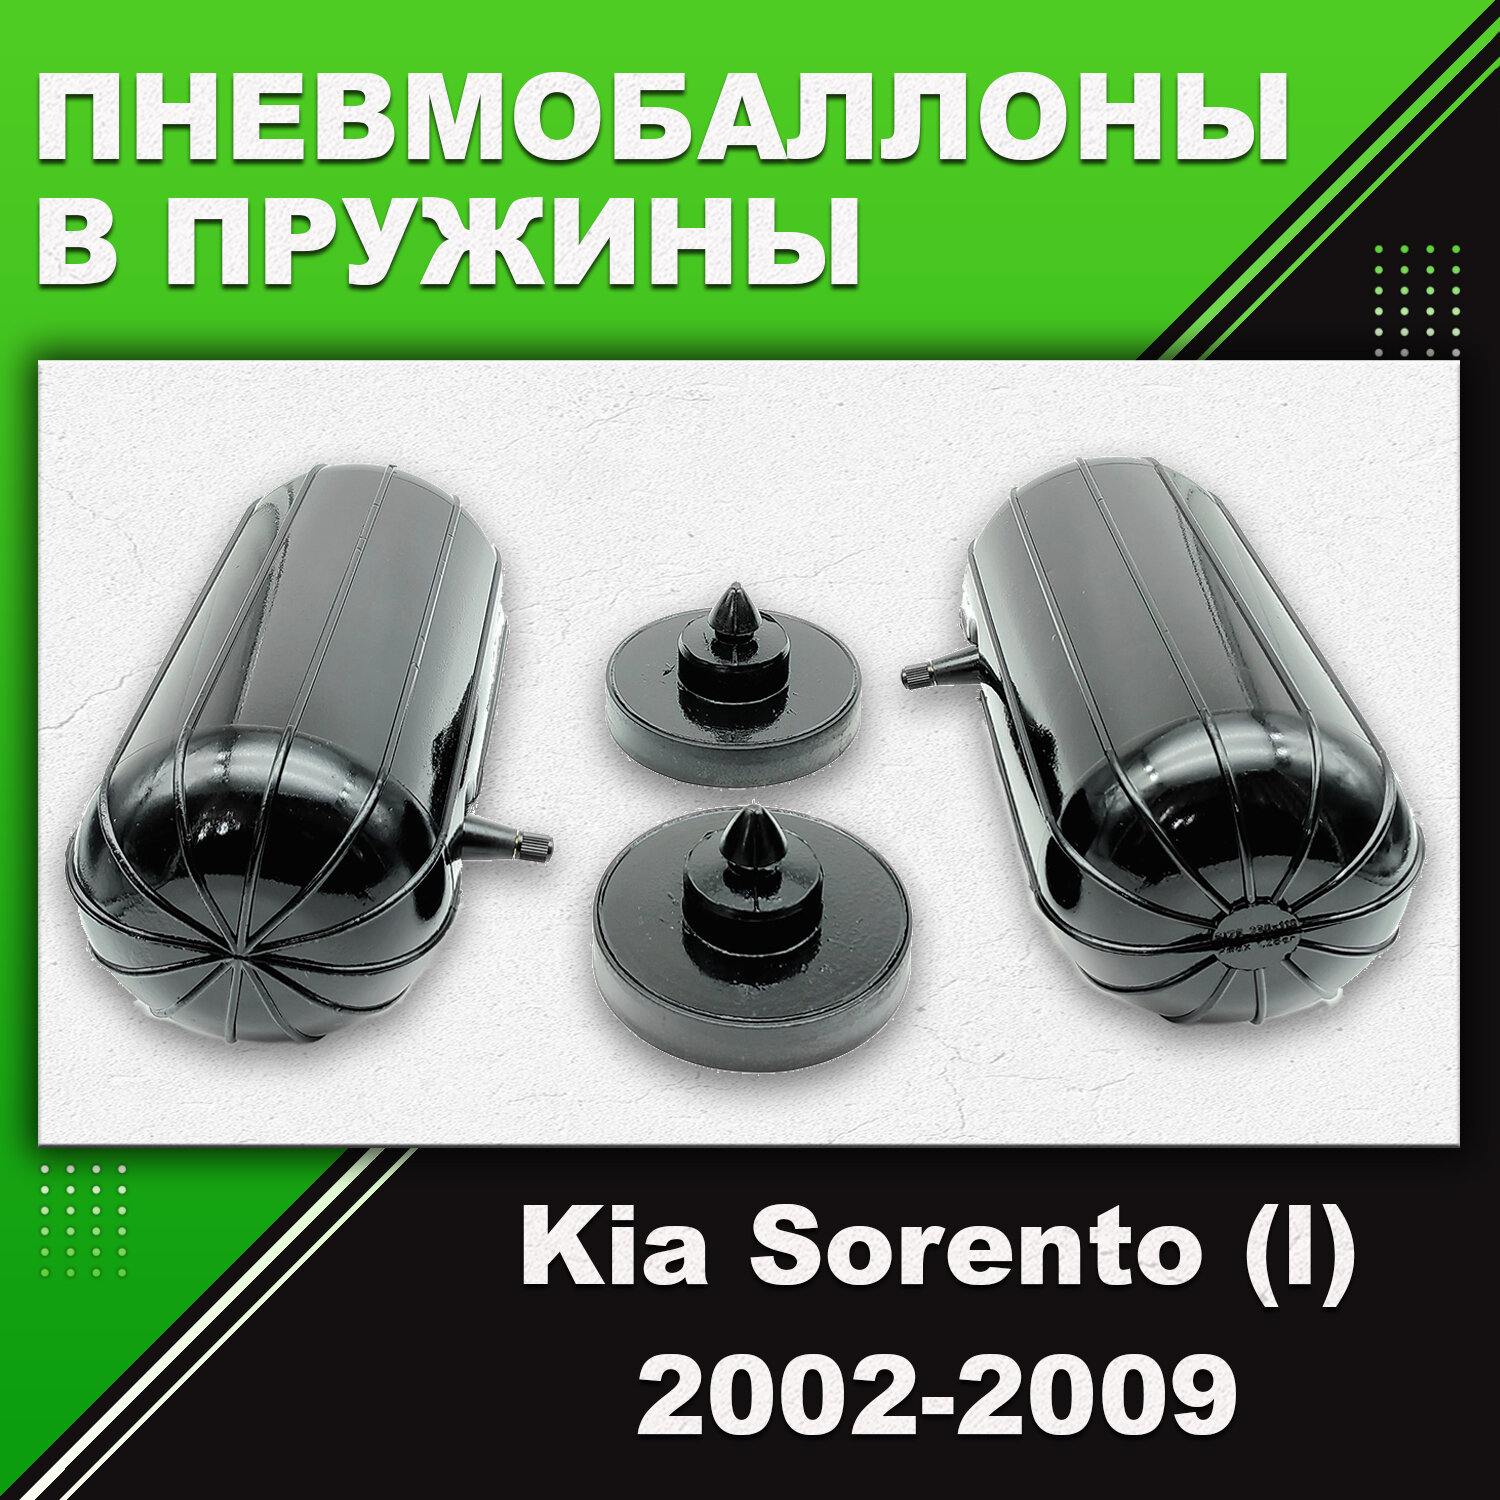 Пневмобаллоны в пружины Kia Sorento, (l), 2002-2009